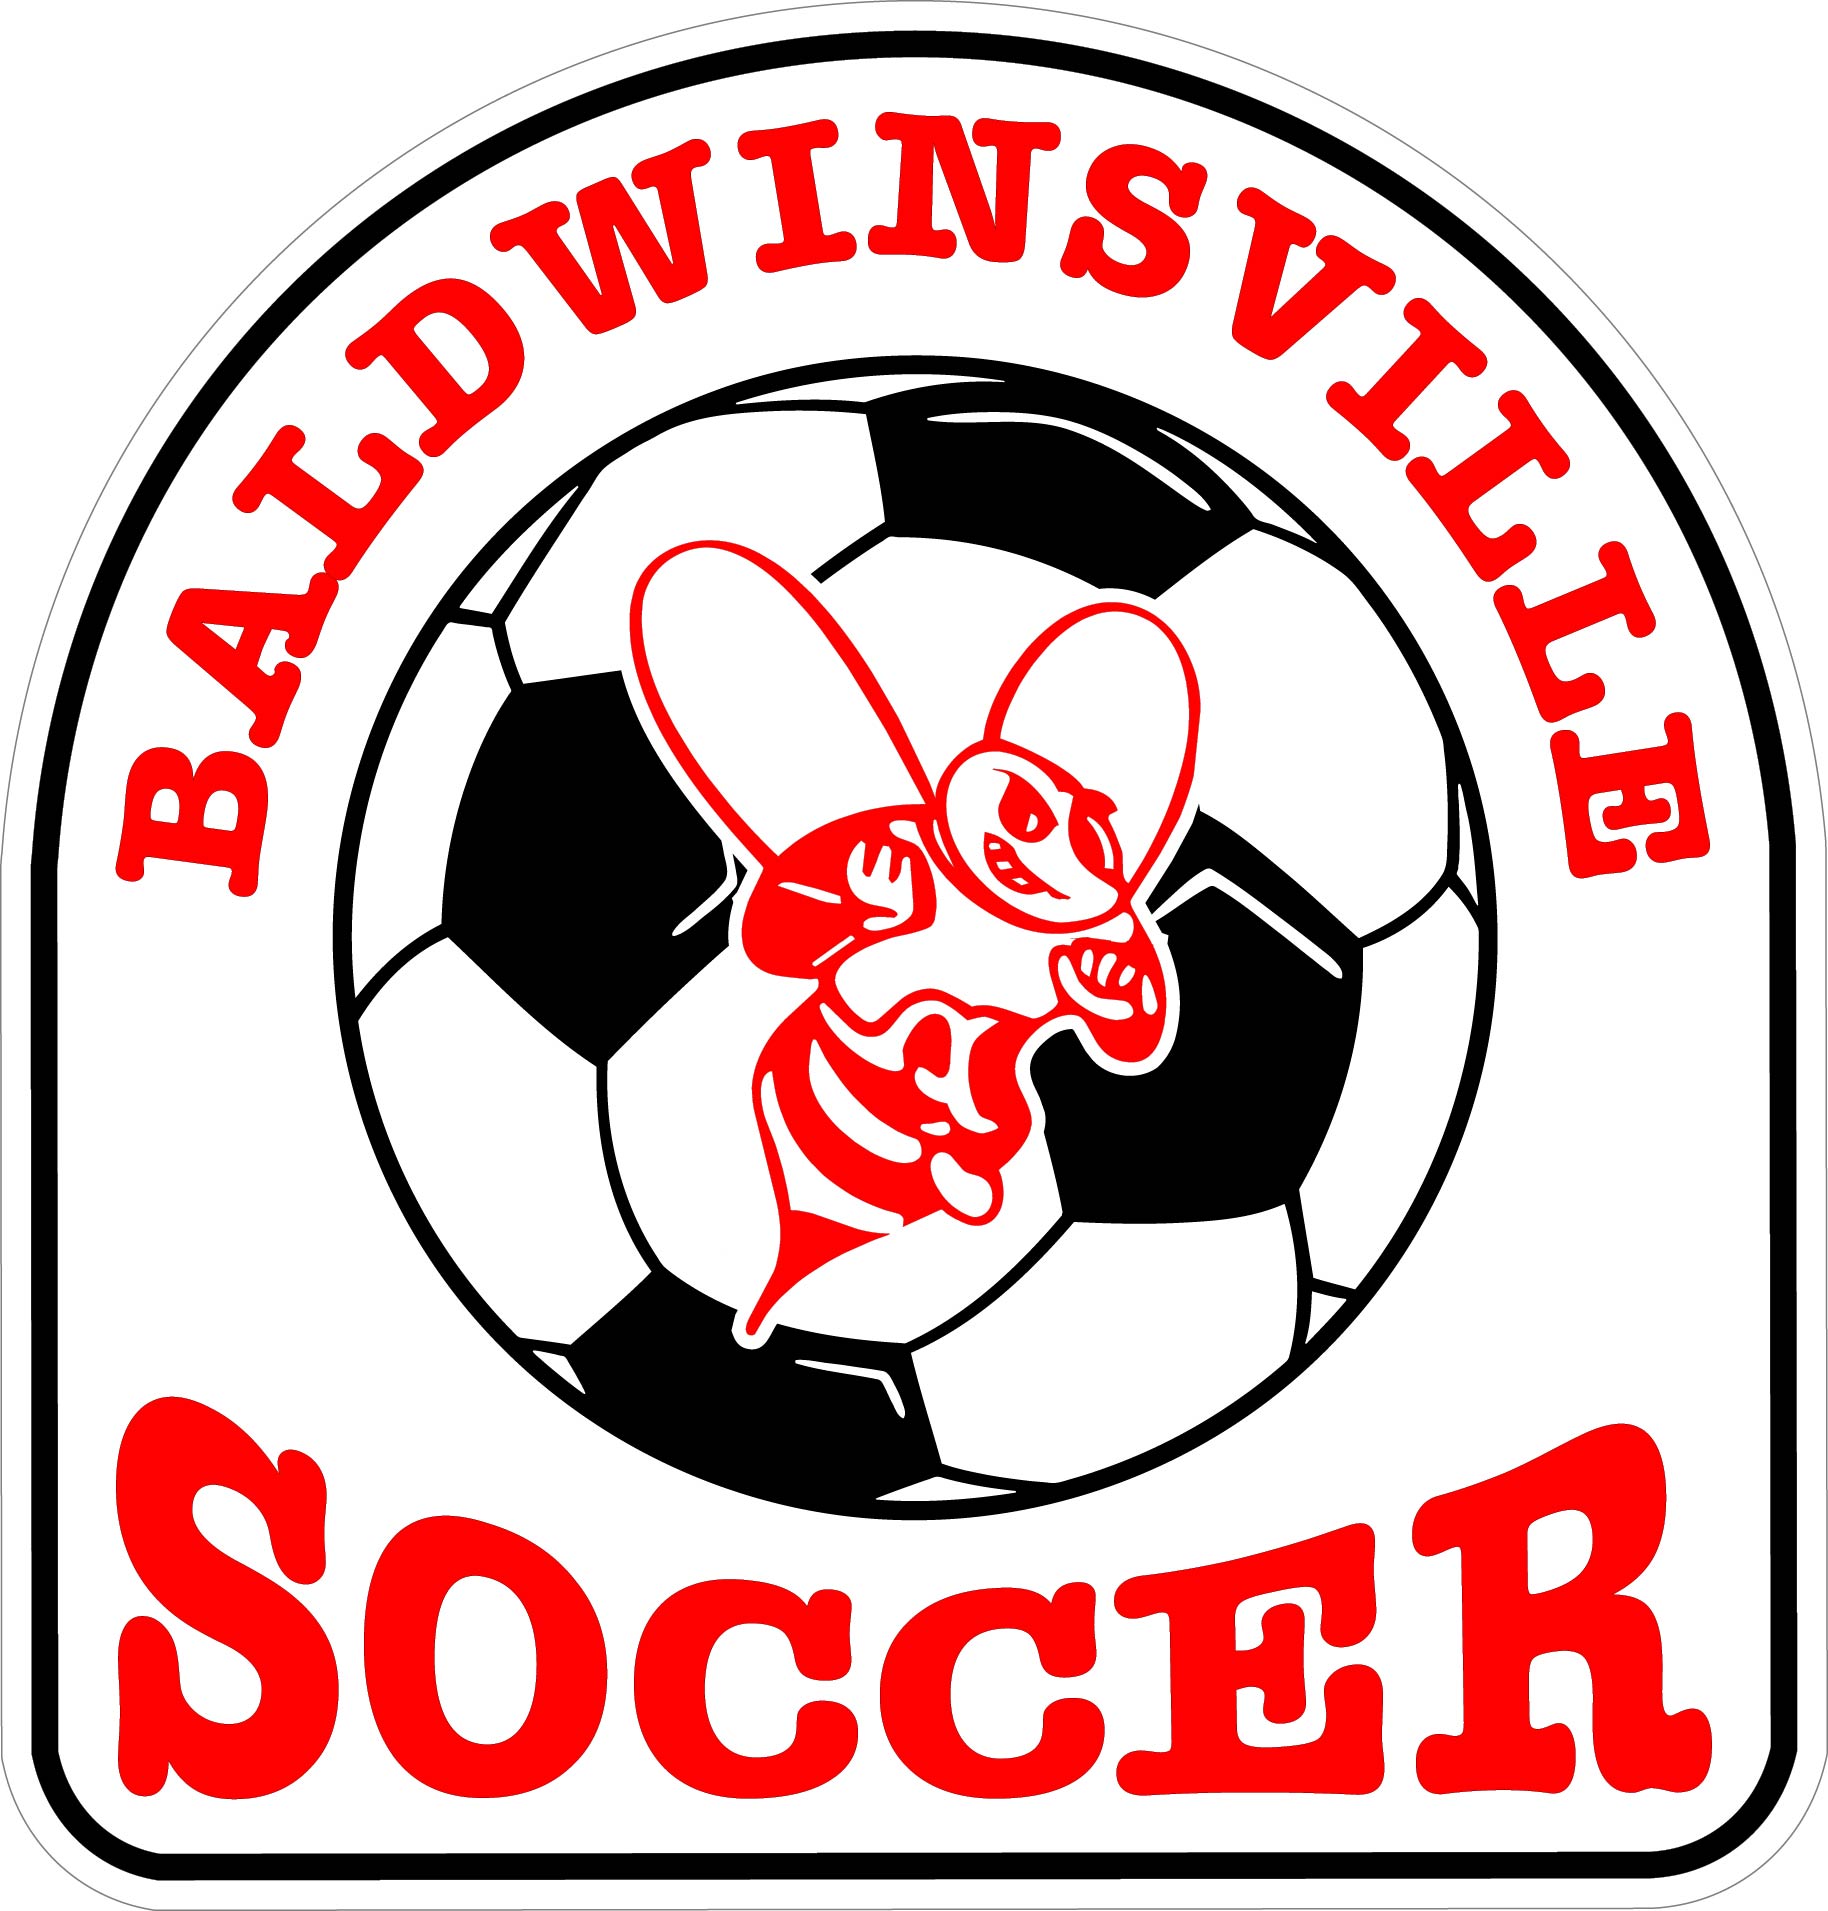 "Baldwinsville Soccer" Decal